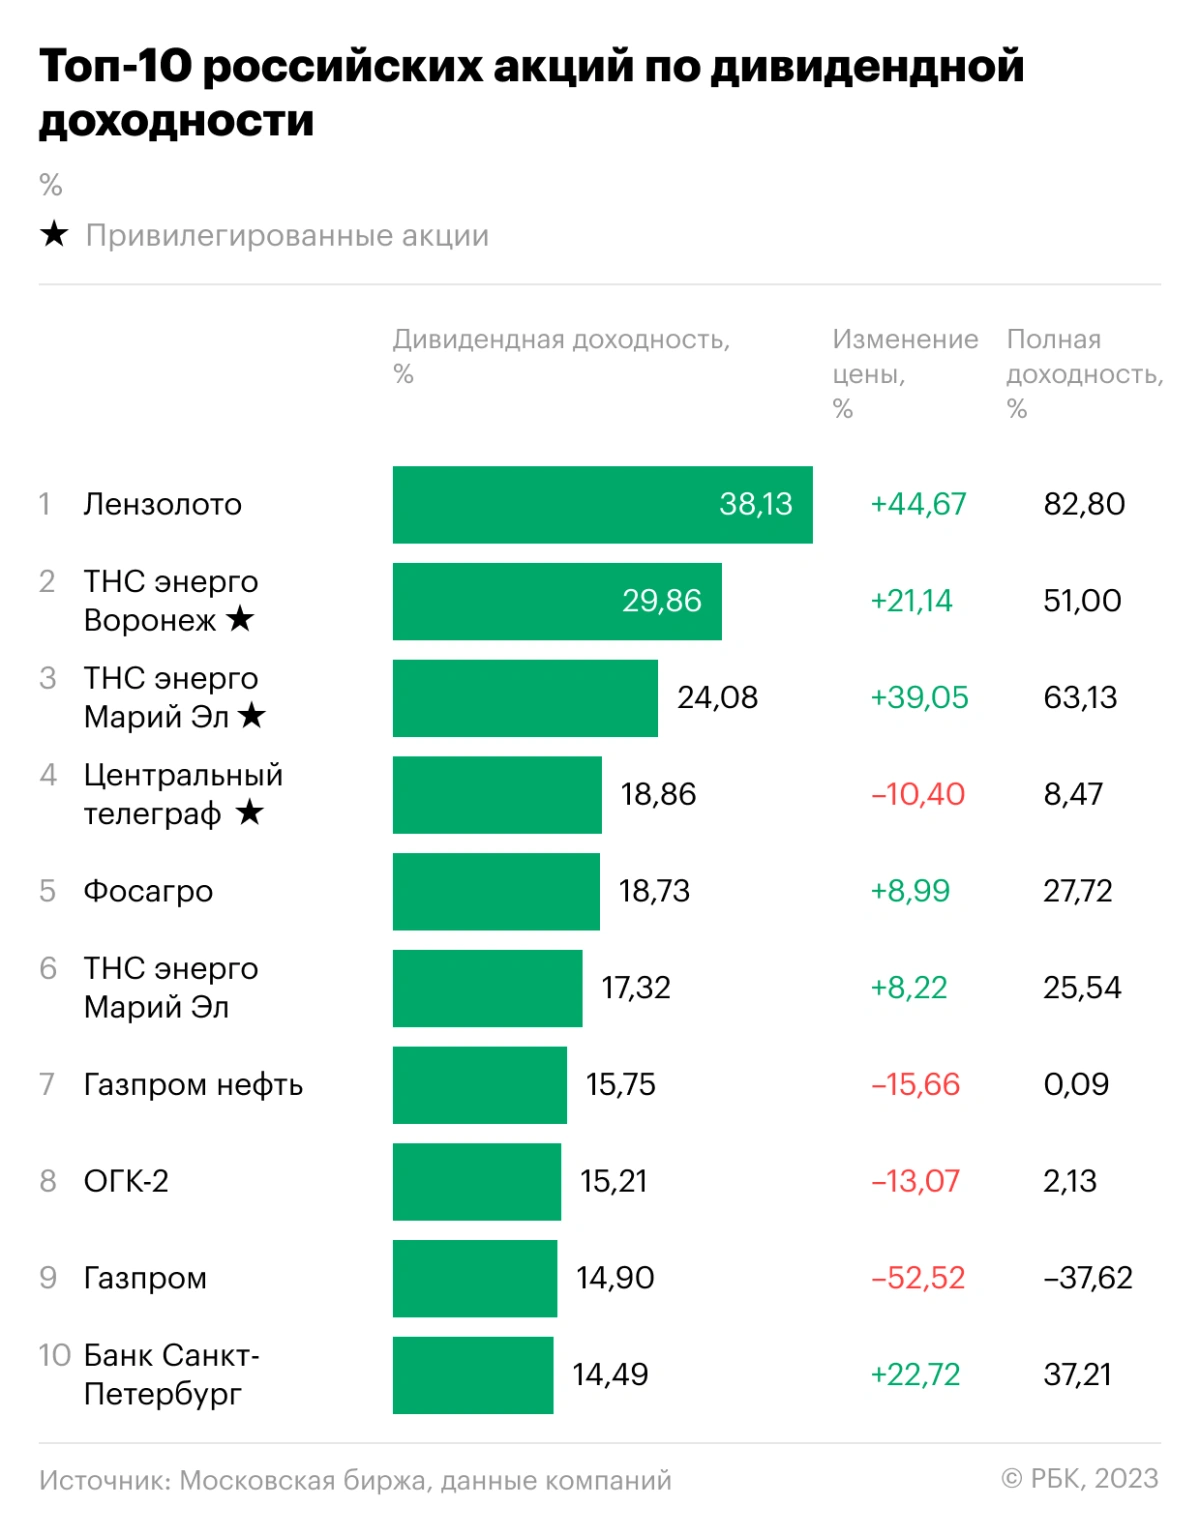 Десять российских акций с наибольшей дивидендной доходностью в 2022 году